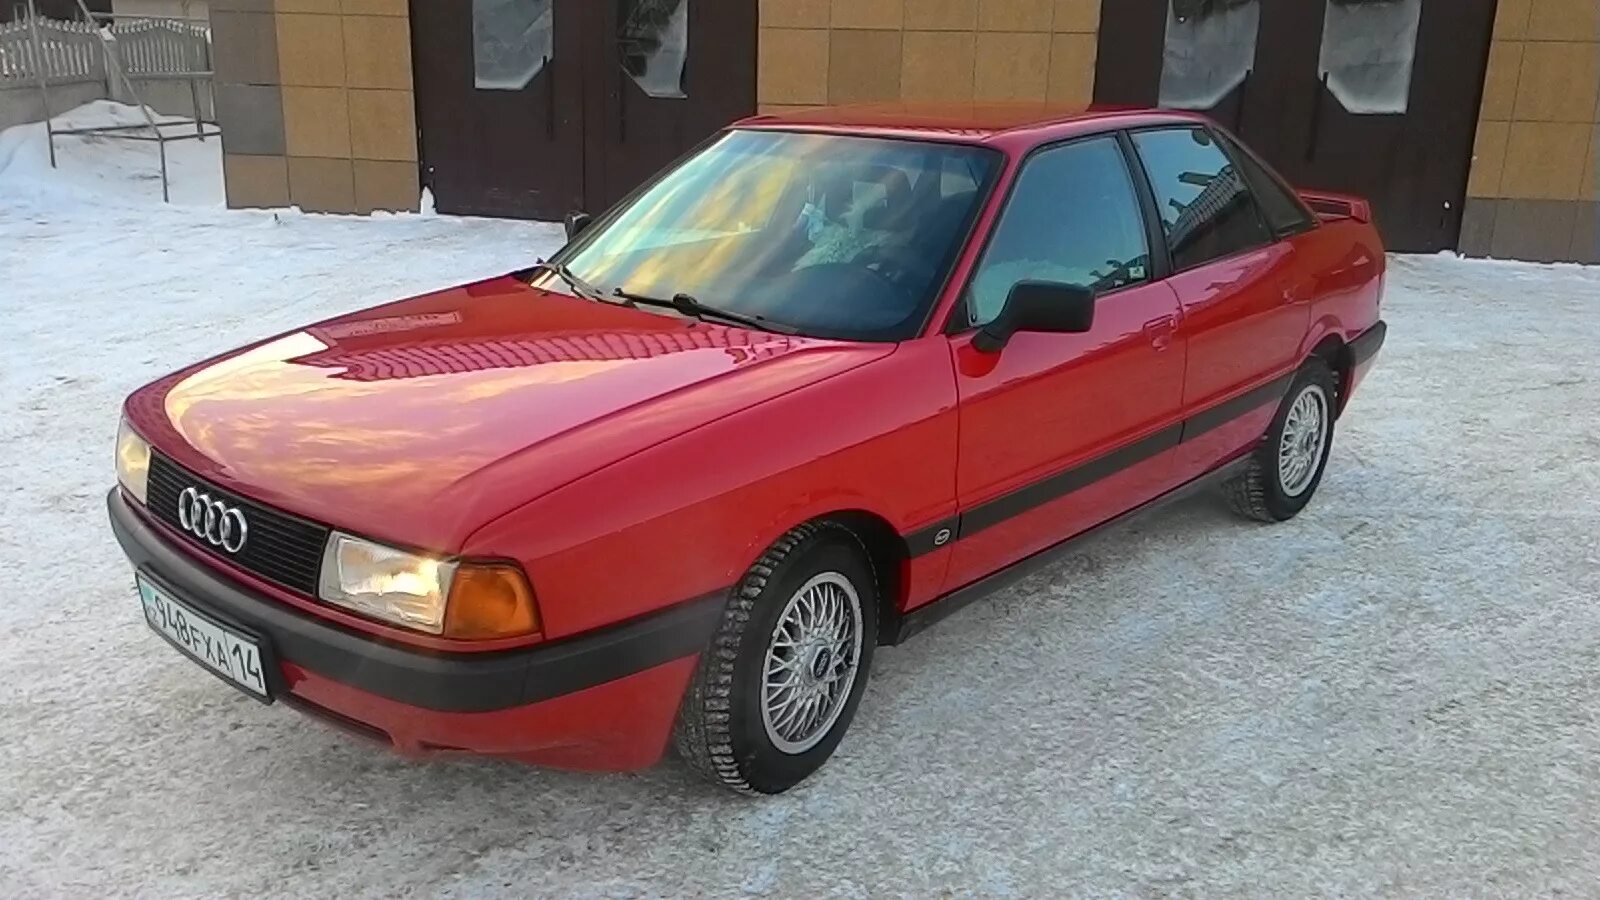 Купить ауди 80 в3. Audi 80 b3. Audi 80 b3 Red. Audi 80 b3 1989. Ауди 80 б3 1989.